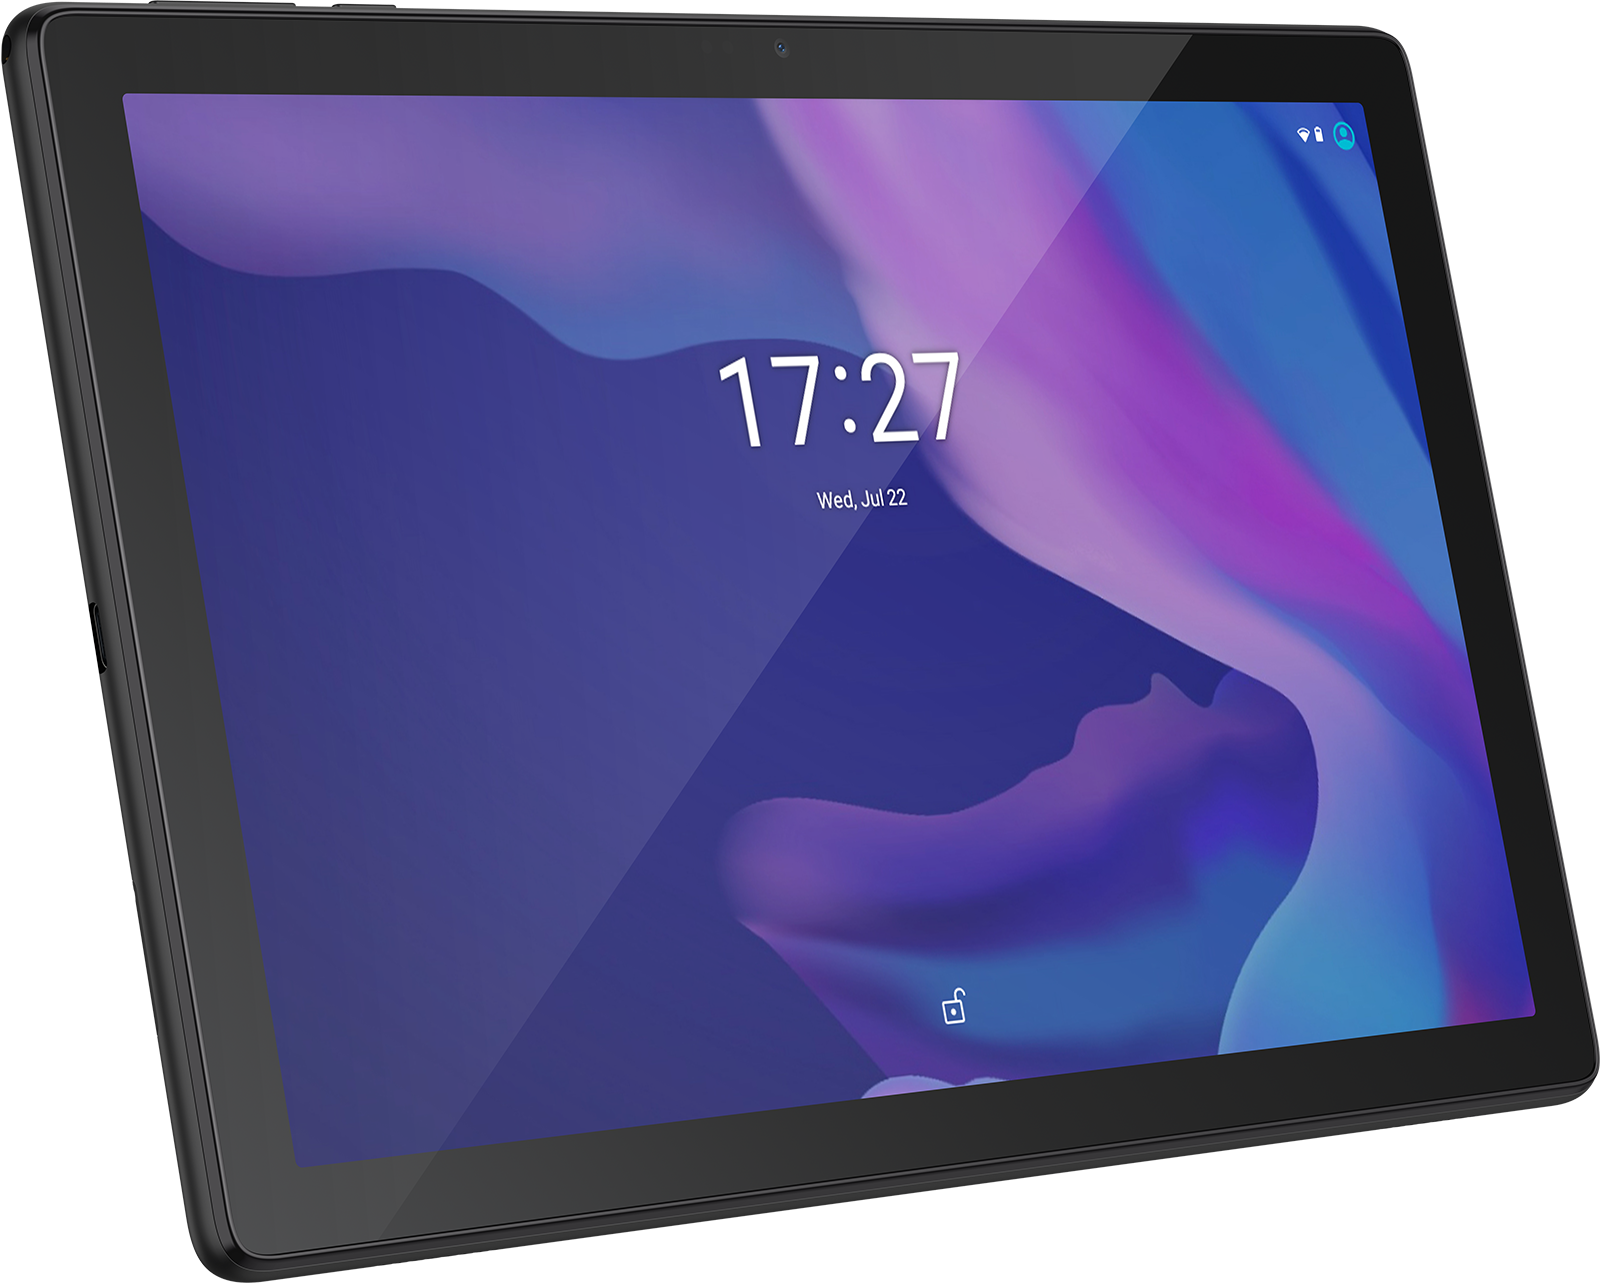 Alcatel 3T es una nueva tablet de 10 pulgadas, Snapdragon 439 y Android 9.0 Pie desde 160 euros #MWC19